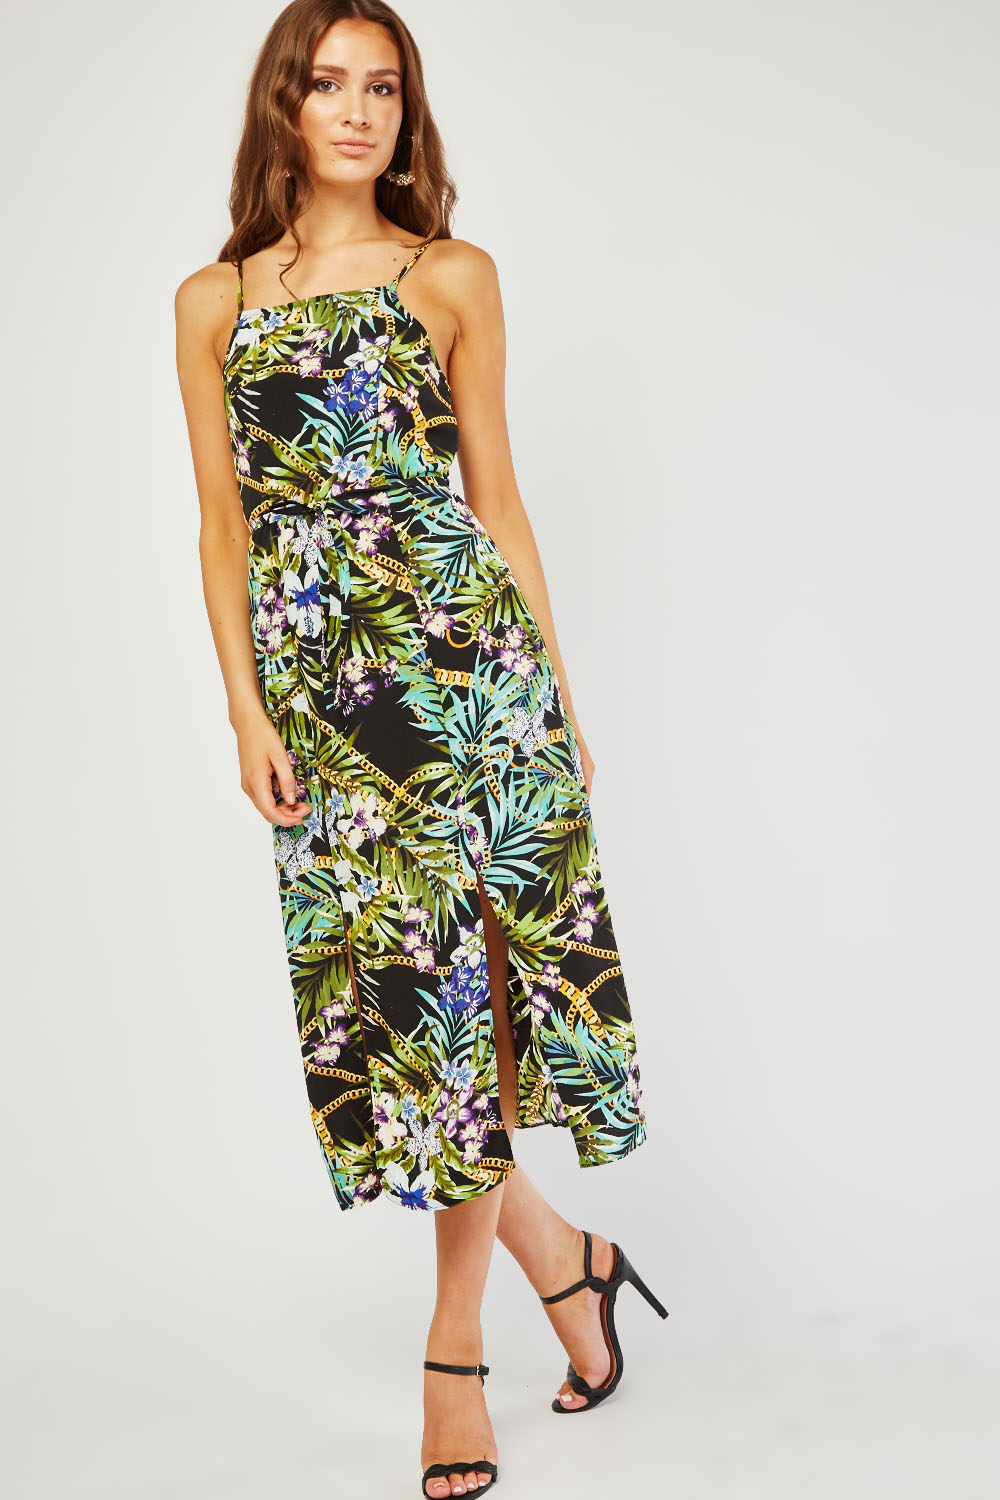 Tropical Print Midi Dress - Just $7